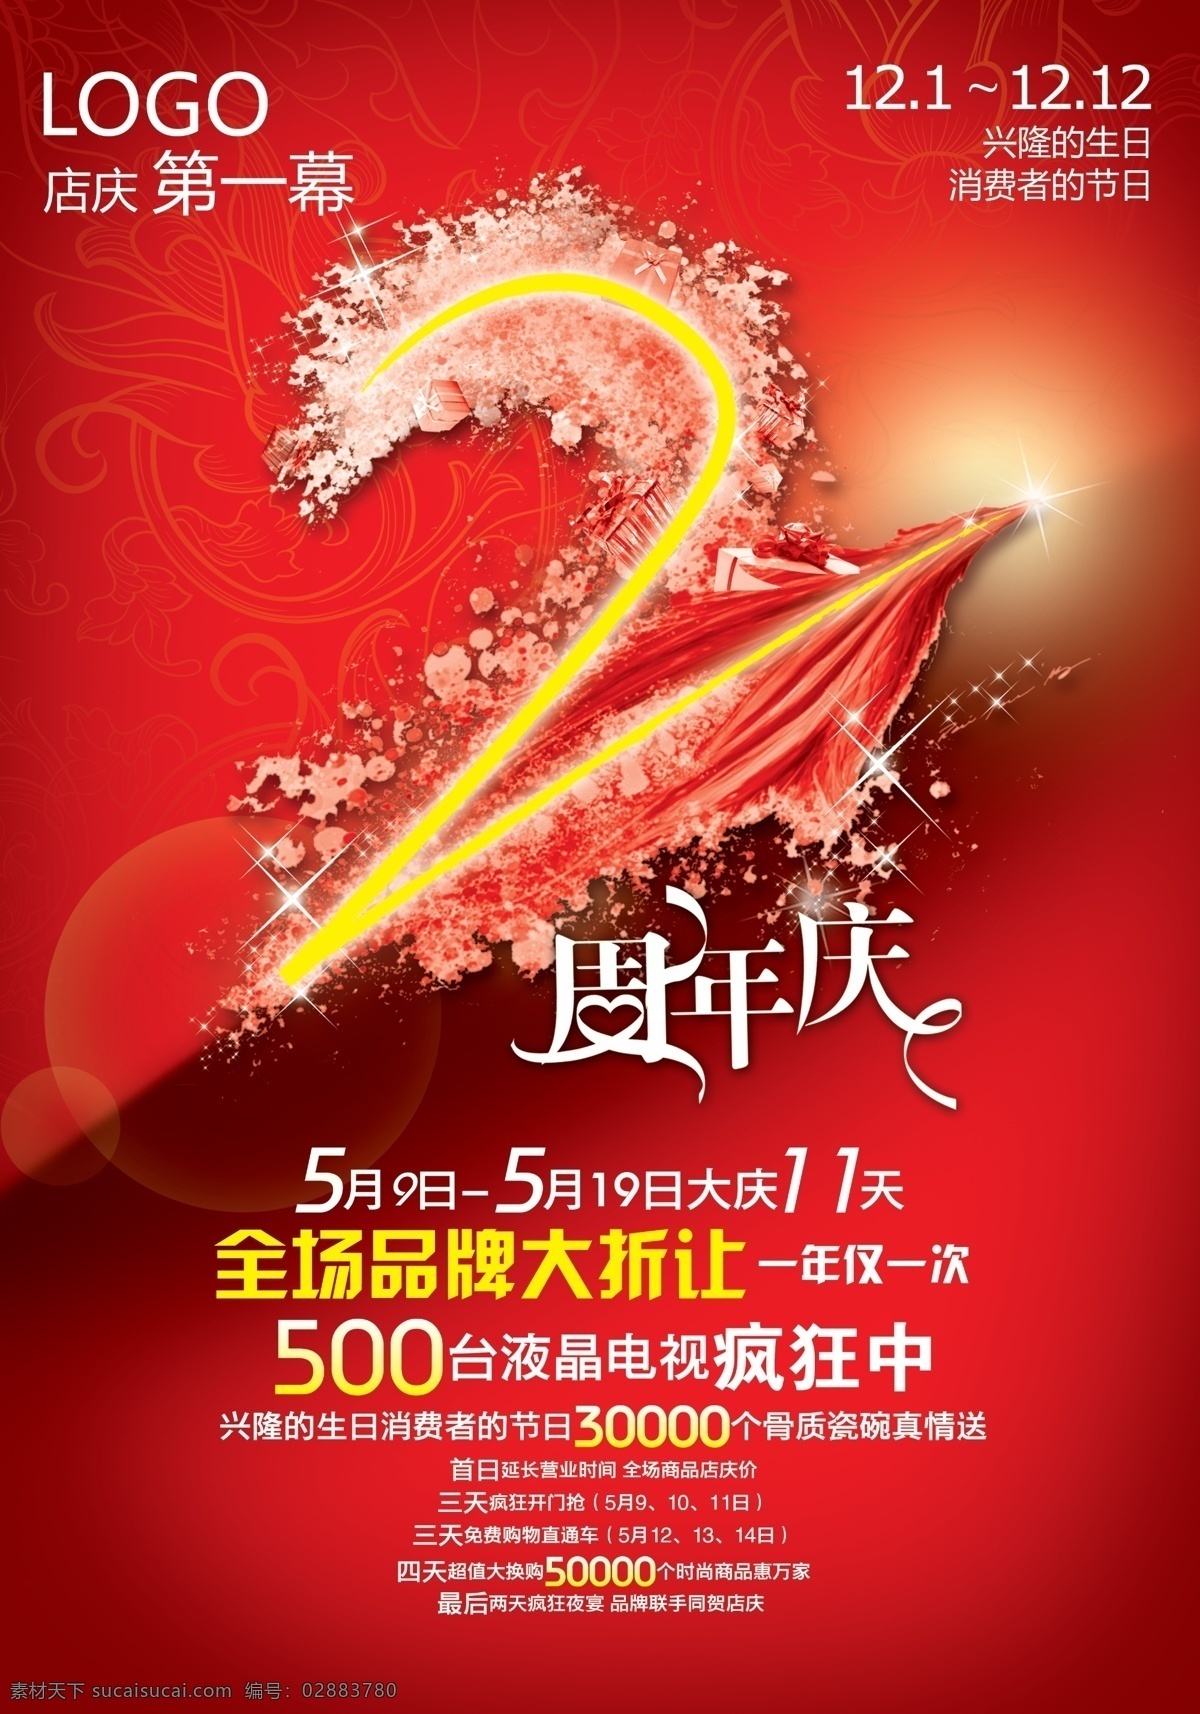 2周年店庆 店庆 周年庆 2周年 红色 星光 渐变色 海报 广告设计模板 源文件